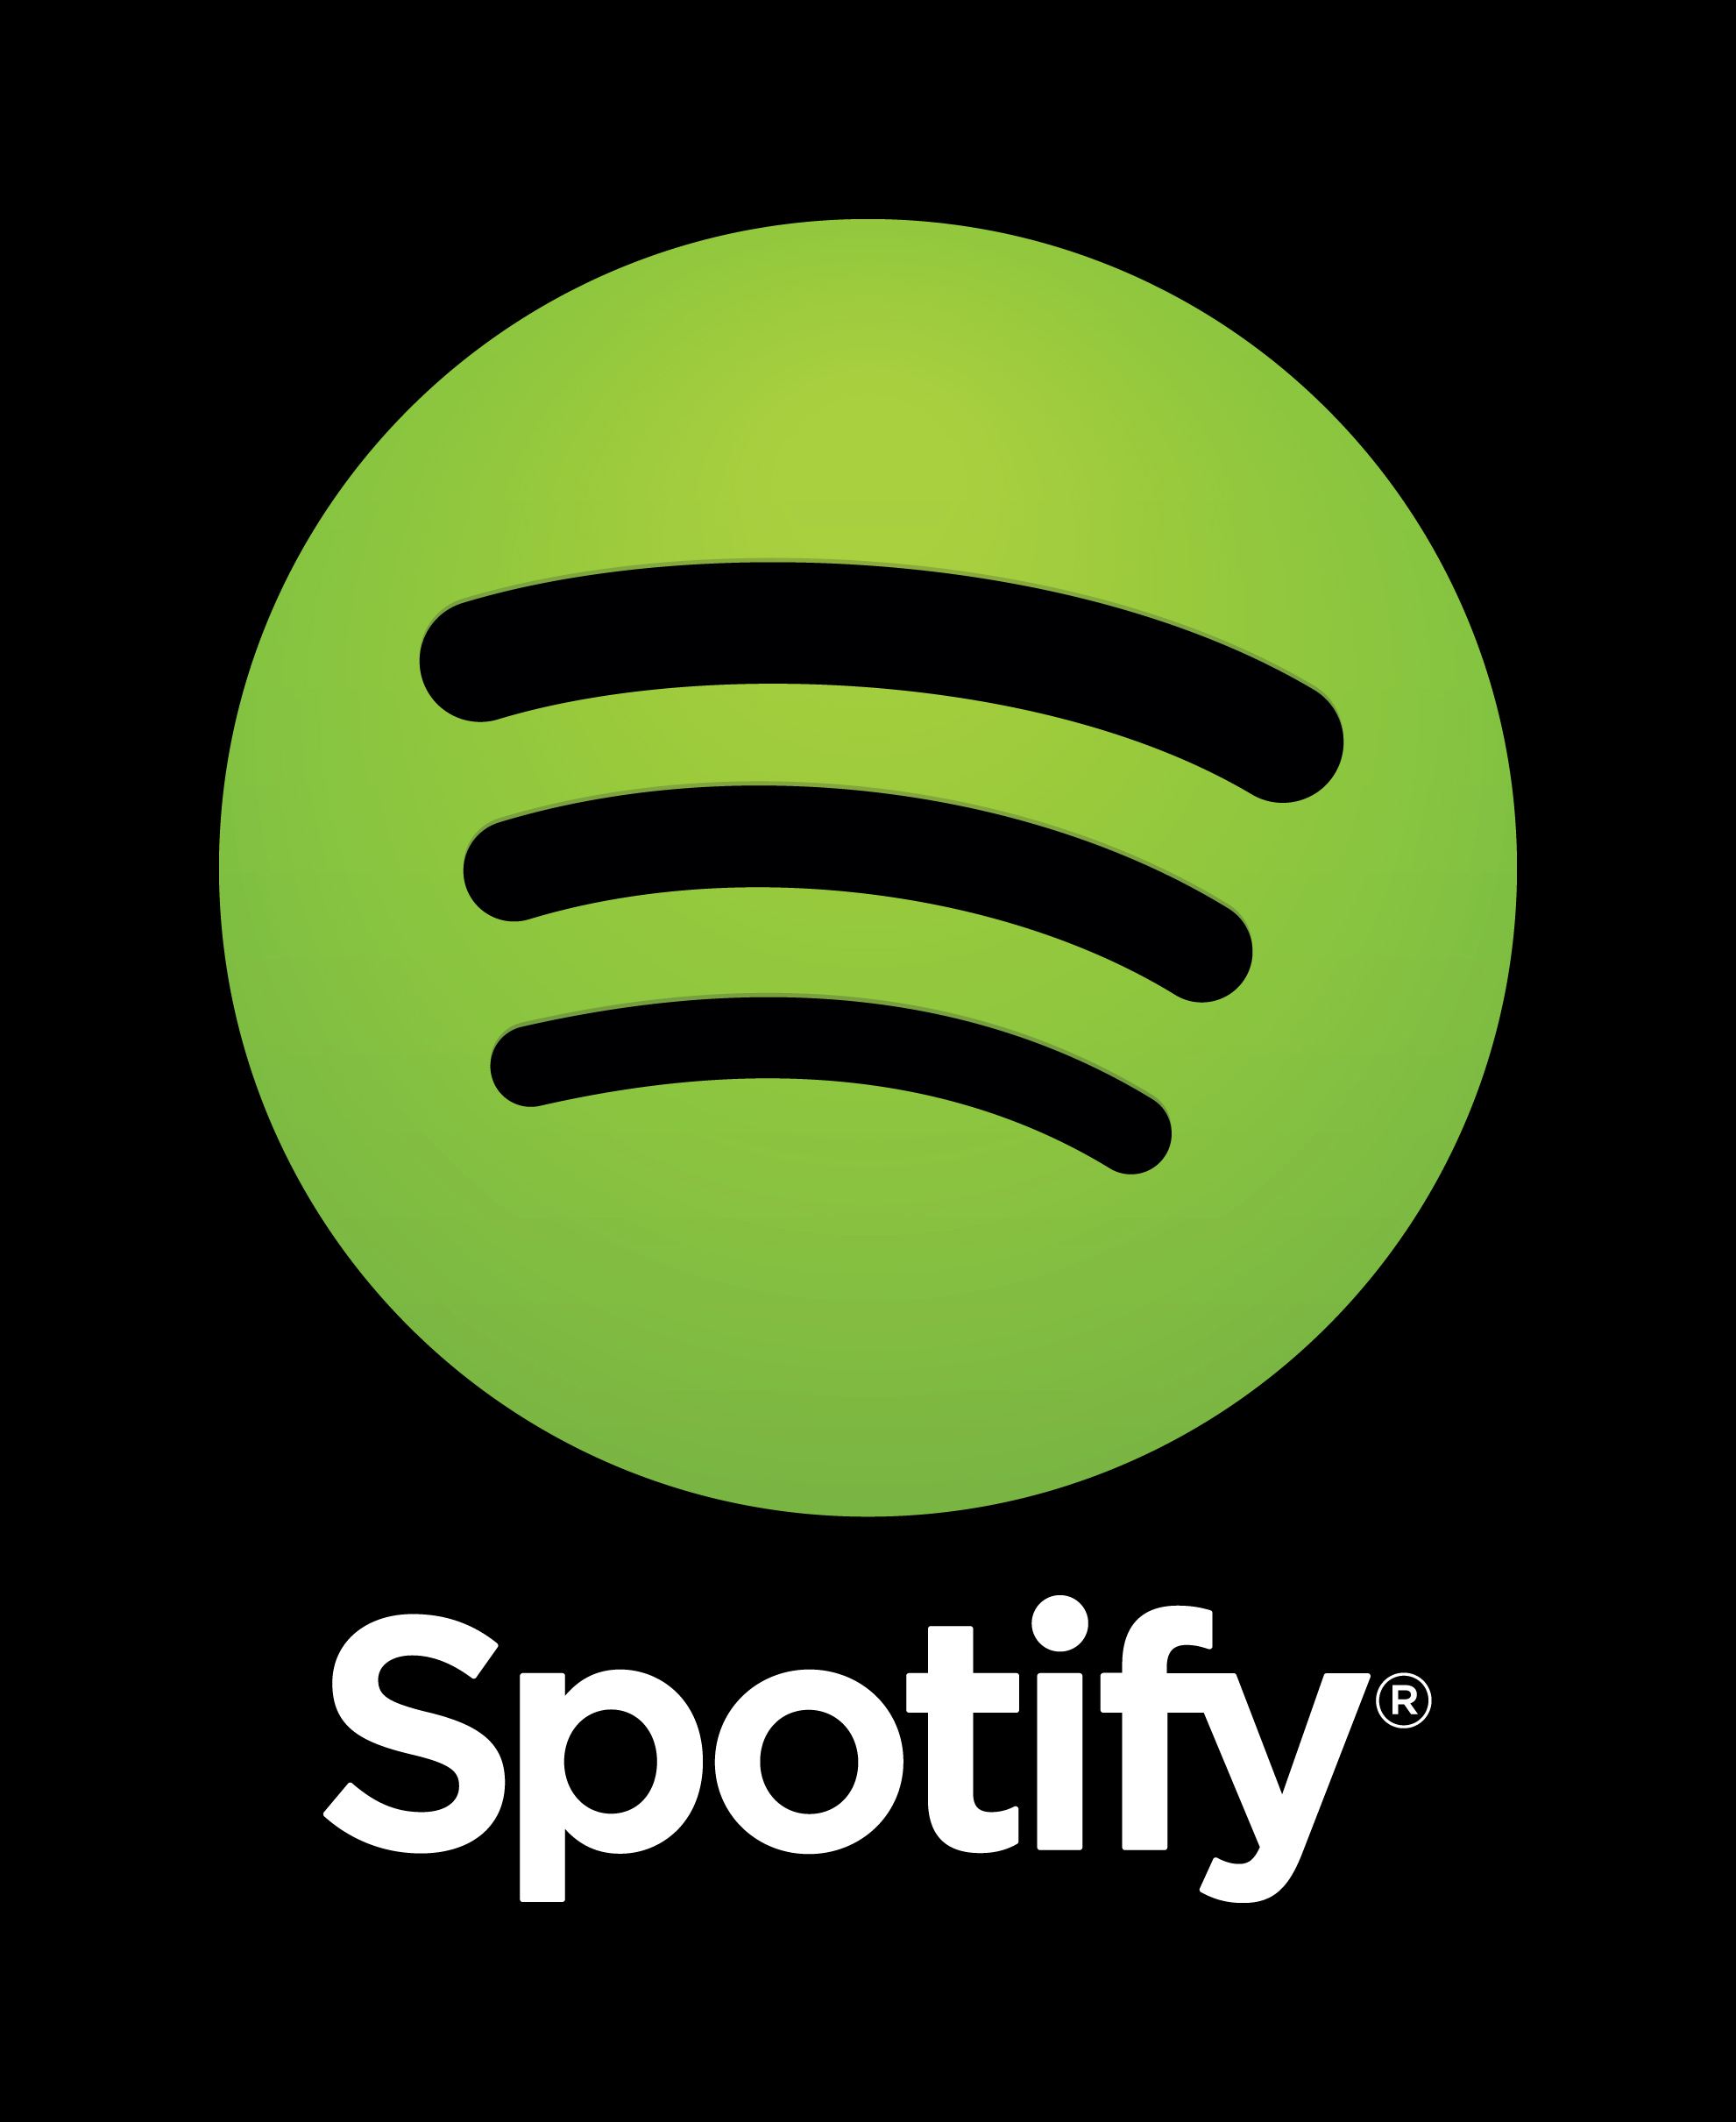 Spotify tendrá en cuenta estados de animo para sugerir canciones